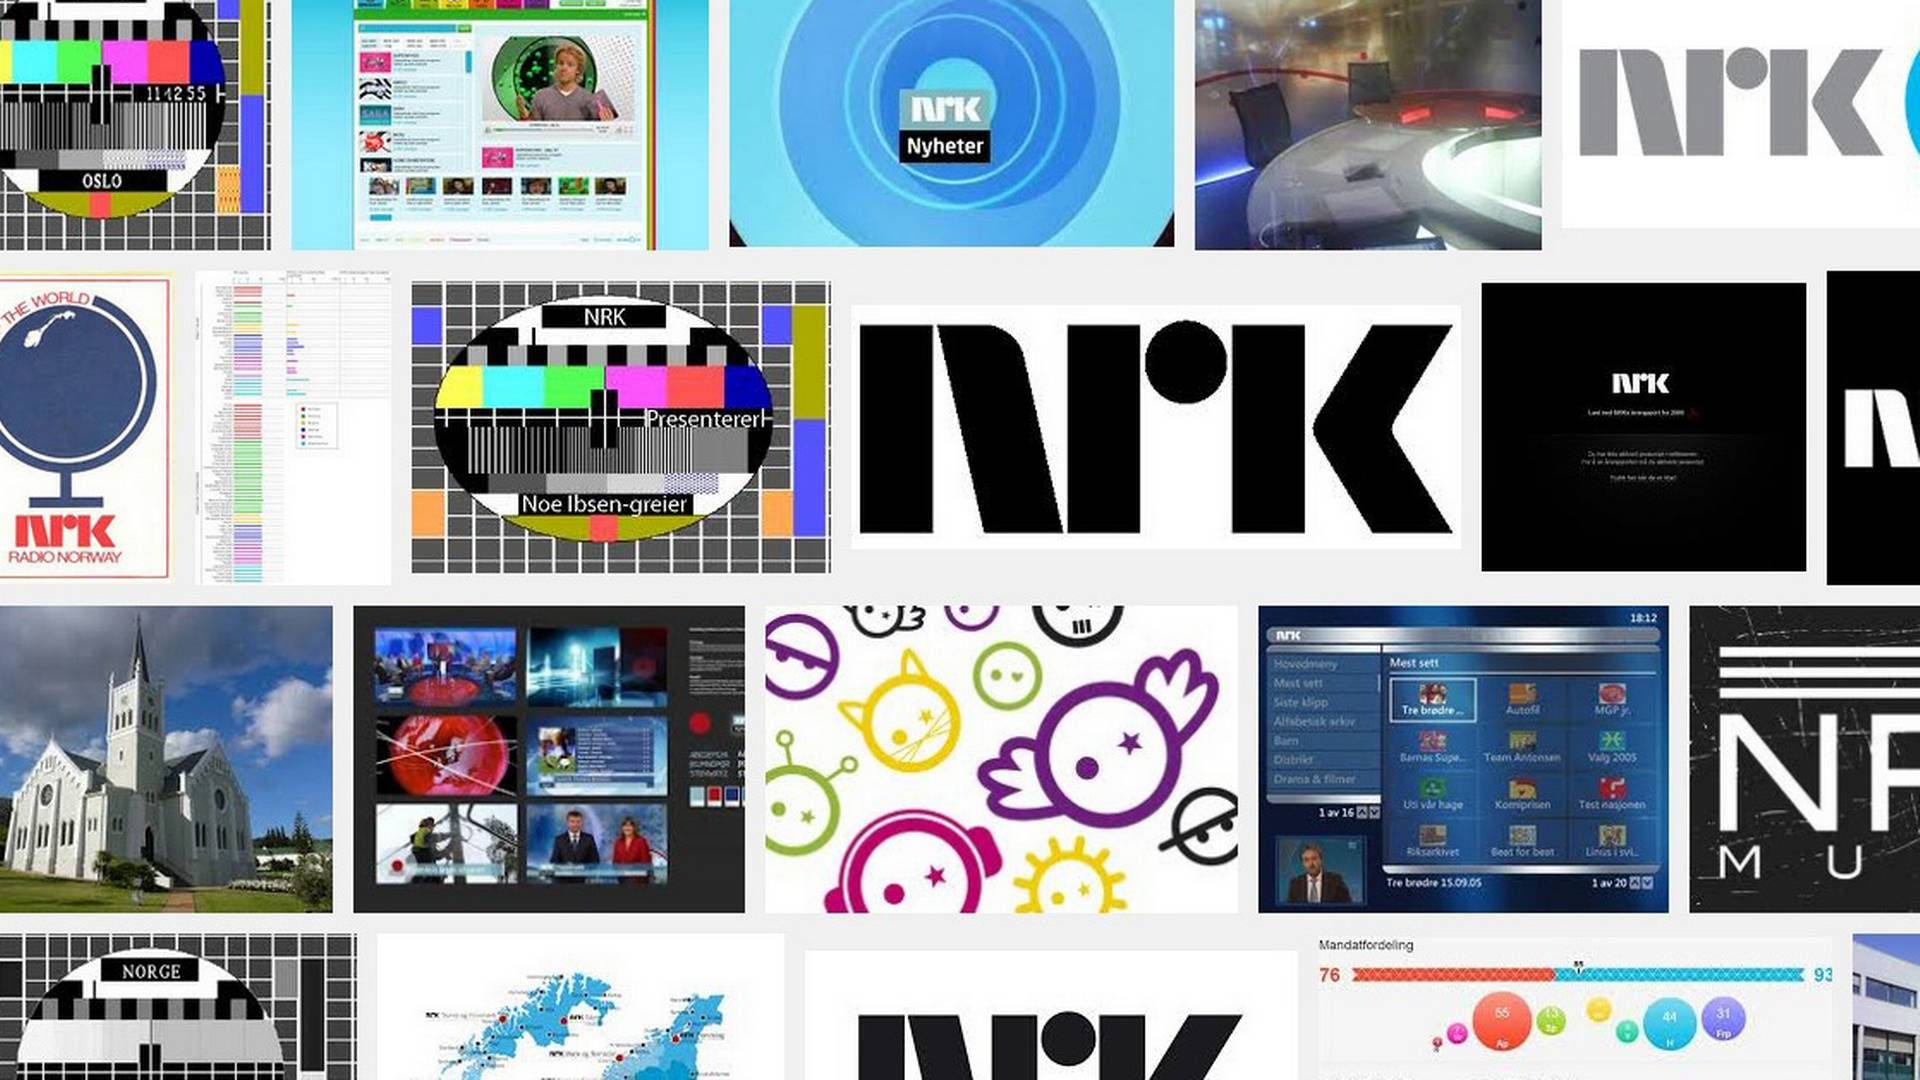 NRK lever ikke af klik, og derfor kan man sagtens dele video-indhold med andre medier, siger nyhedsdirektør.